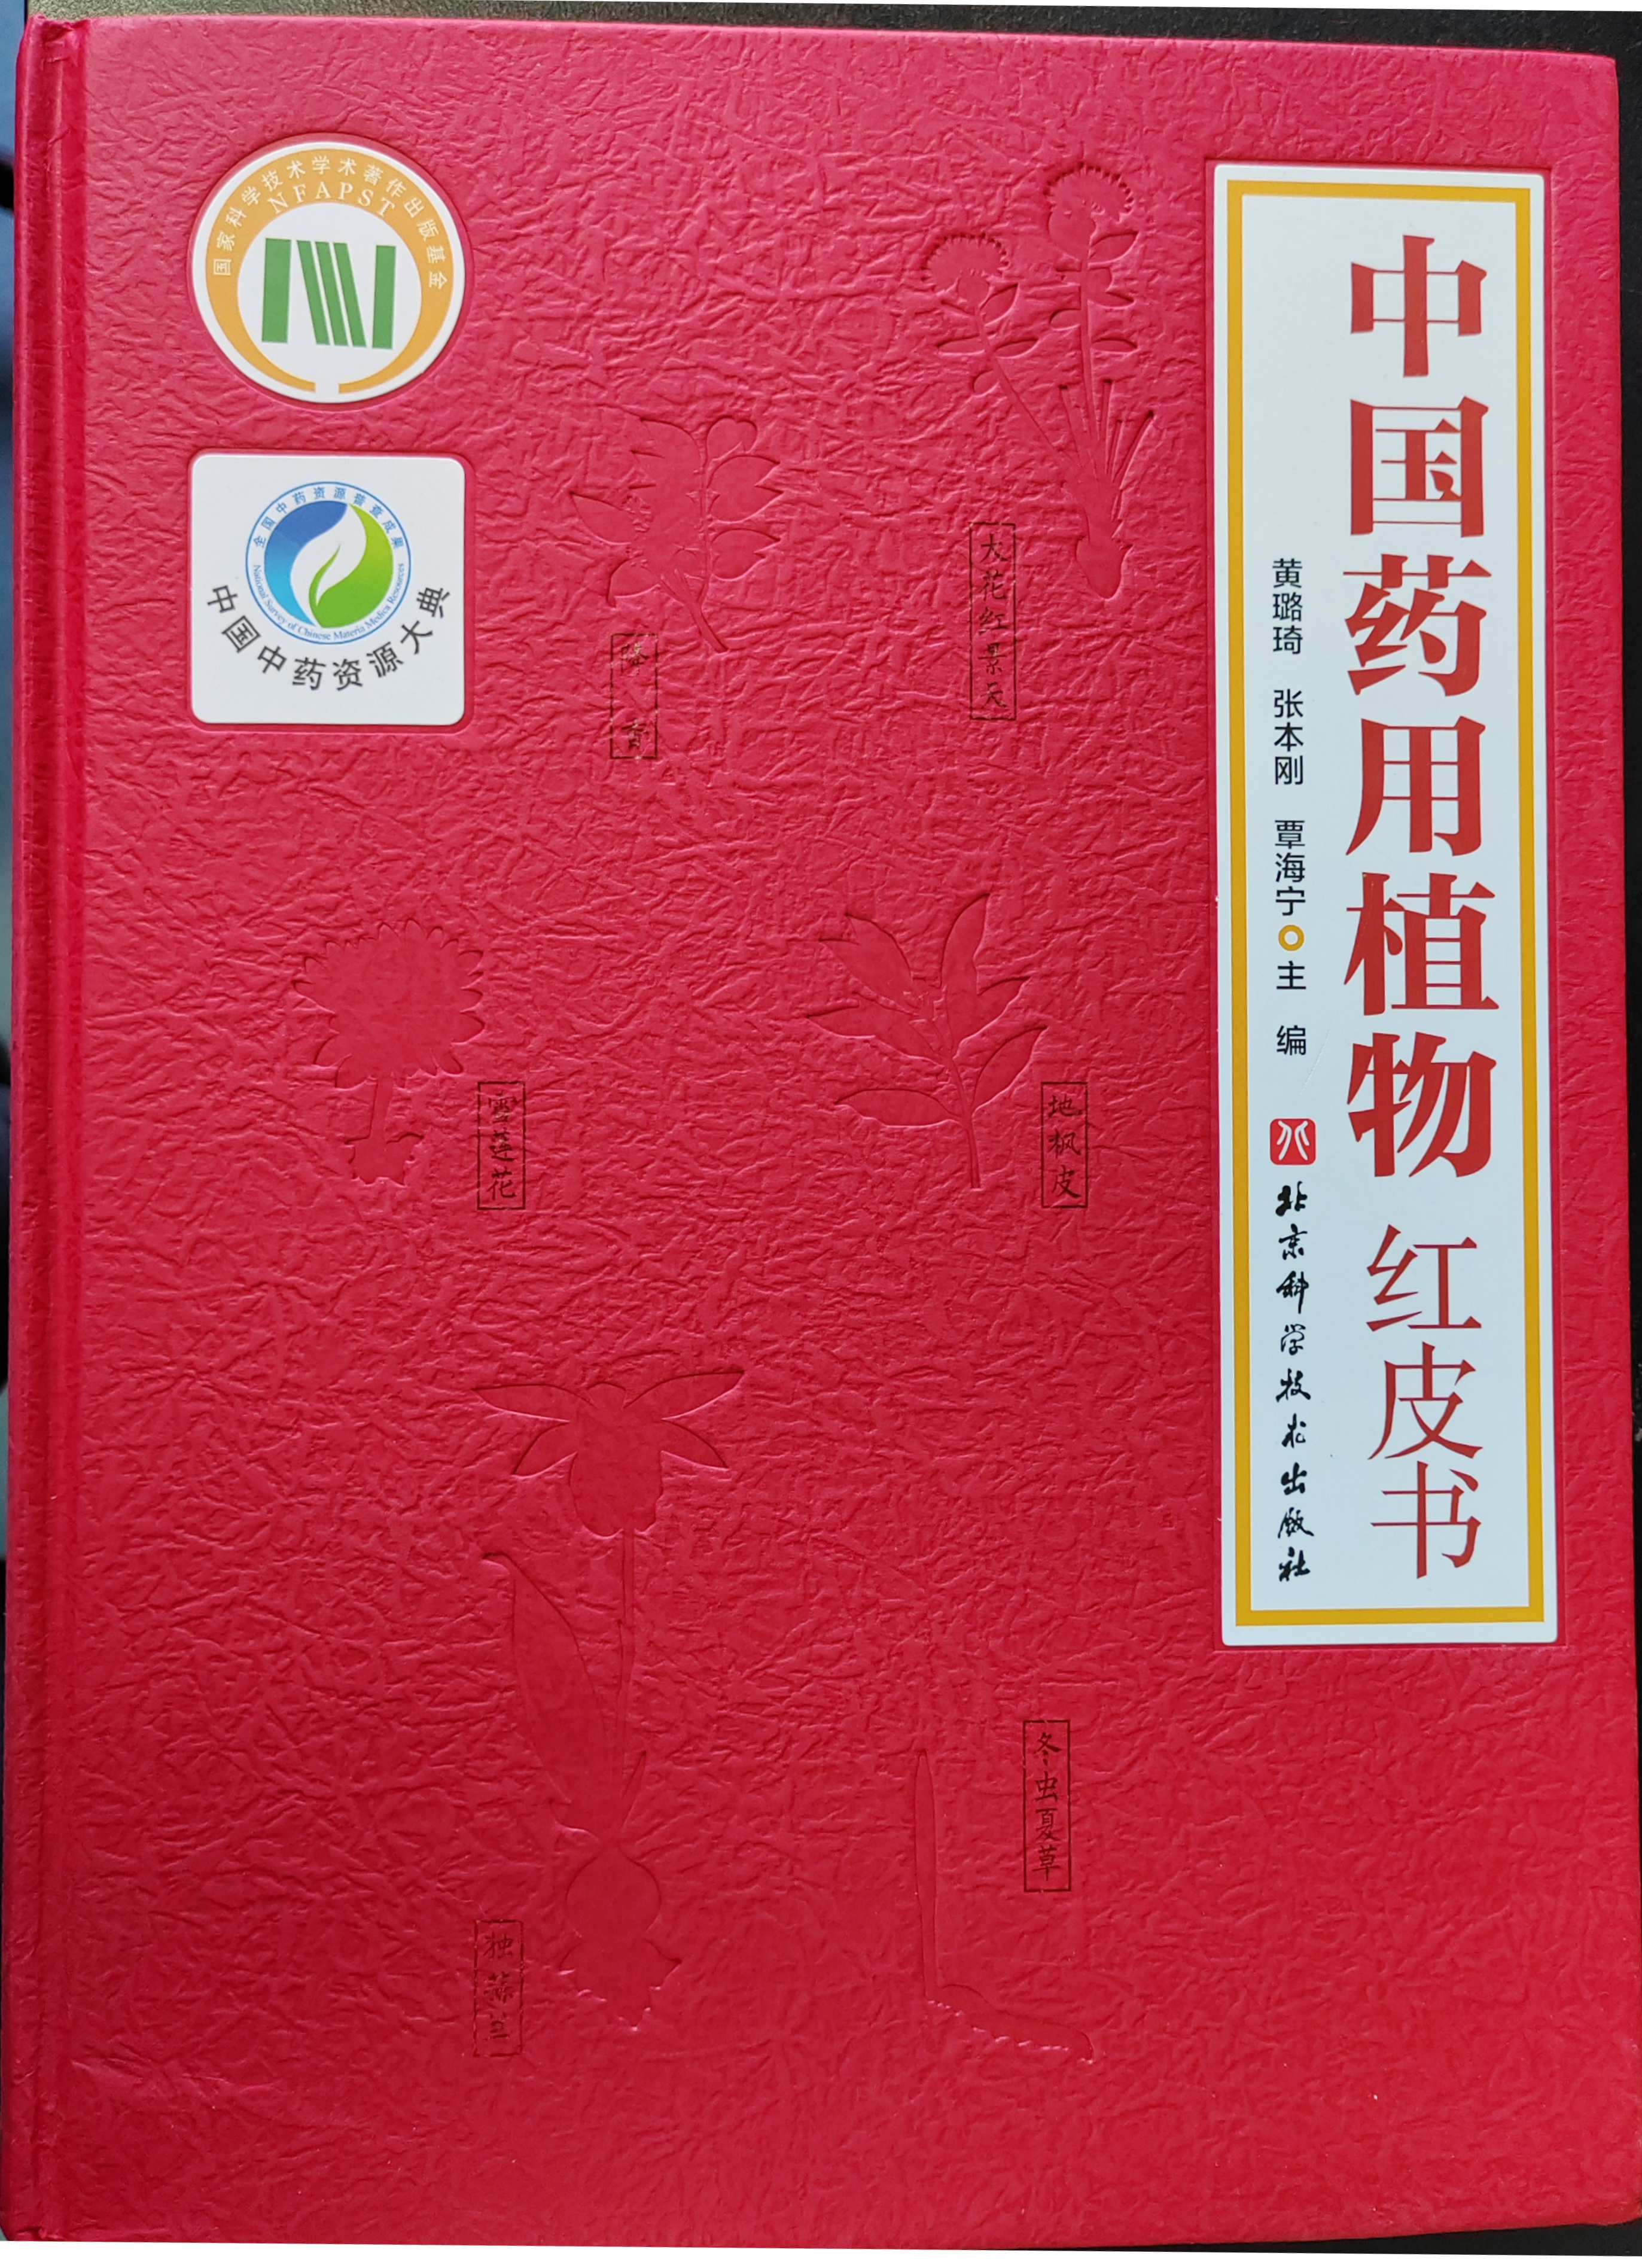 《中国药用植物红皮书》正式出版